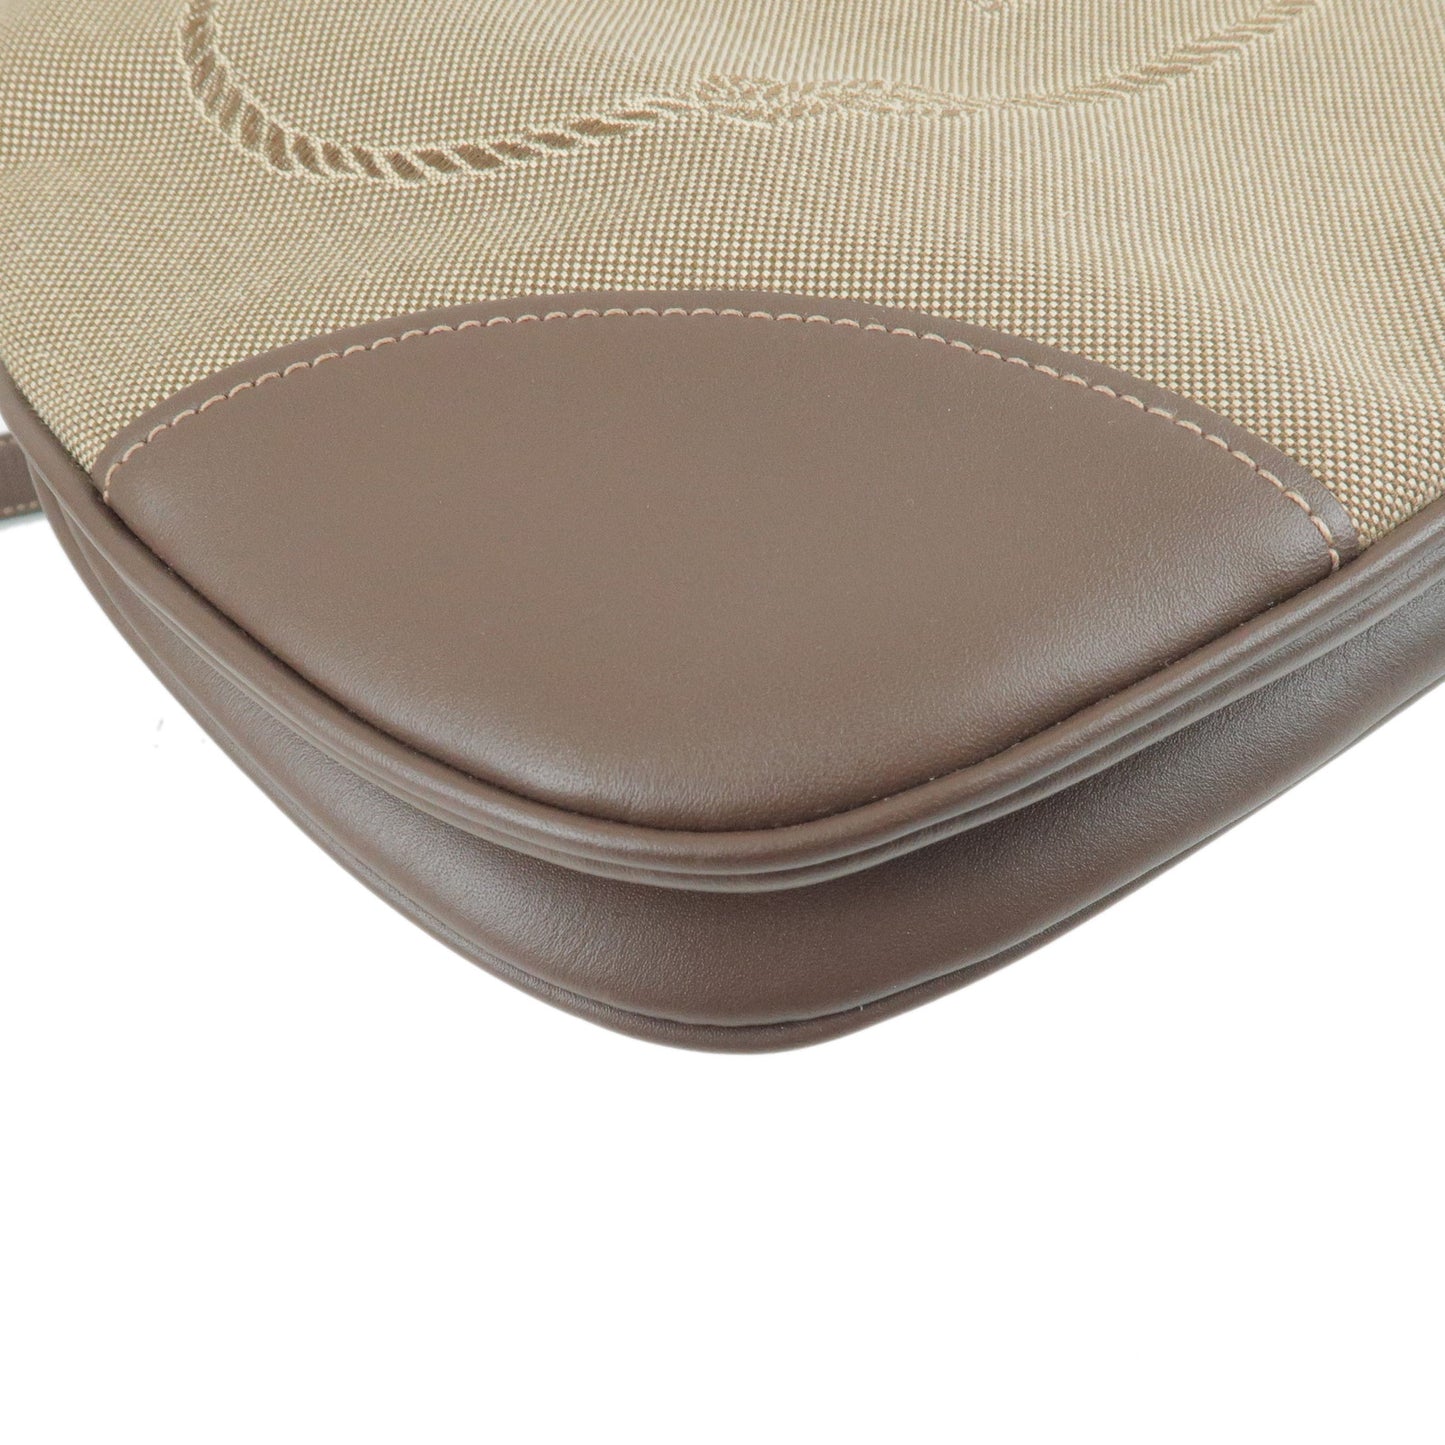 PRADA Logo Jacquard Leather Shoulder Bag Beige Brown BT867A